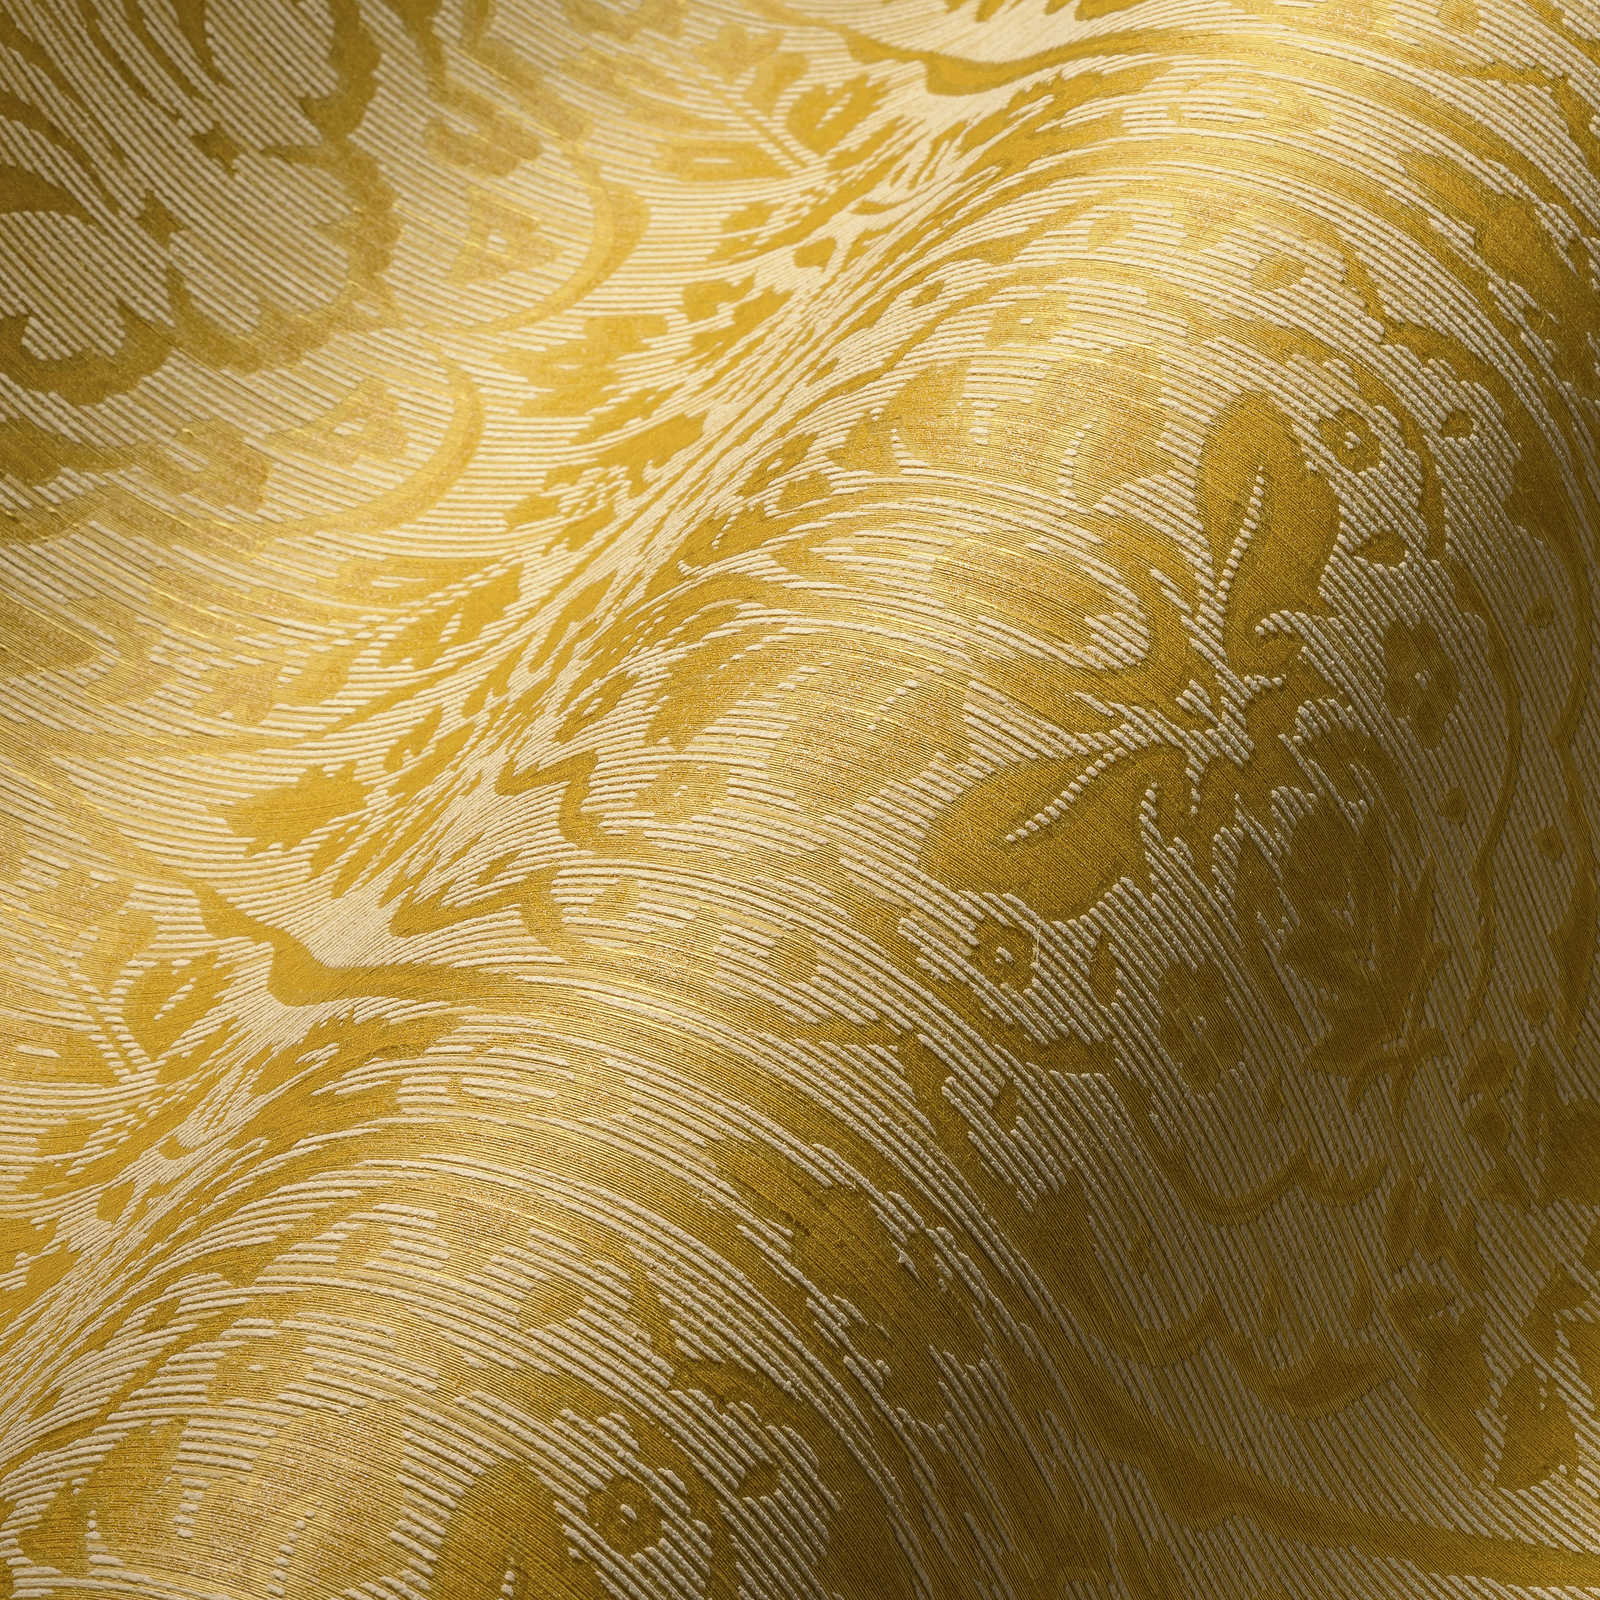             Papel pintado no tejido con diseño de estructura y ornamento - amarillo
        